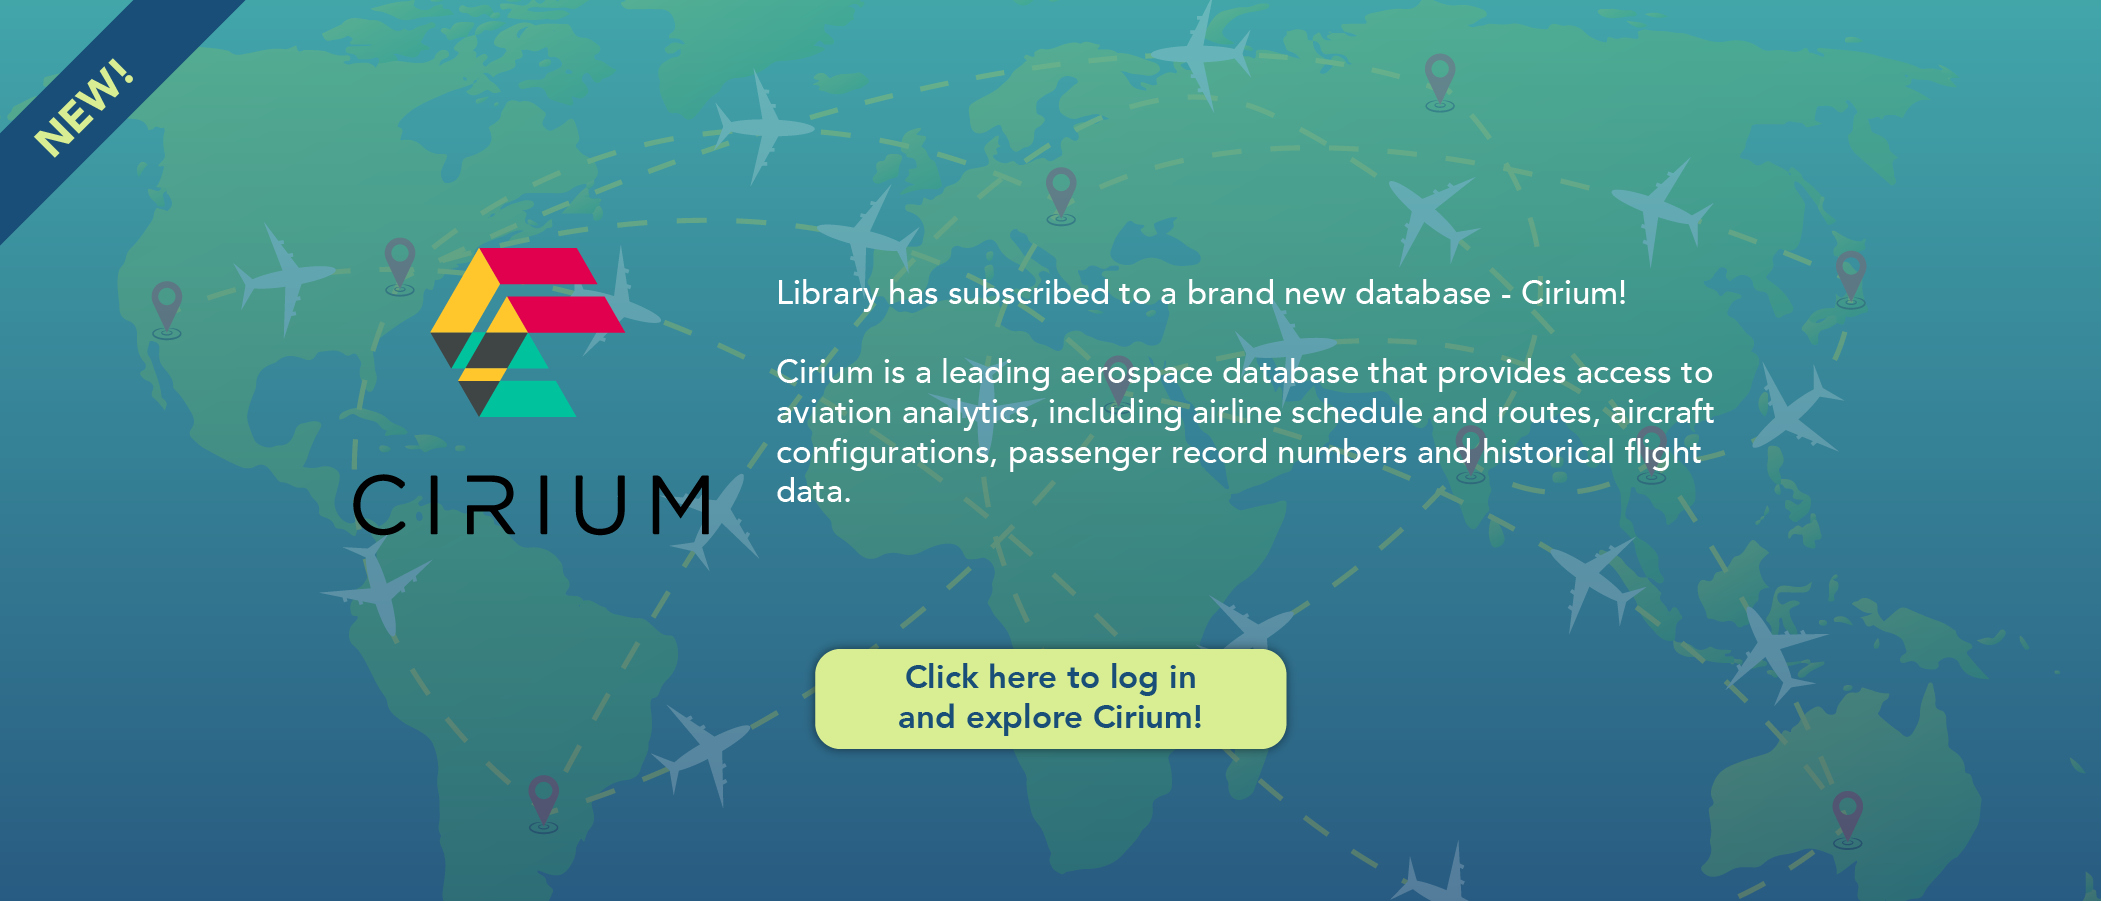 Introducing the Cirium database